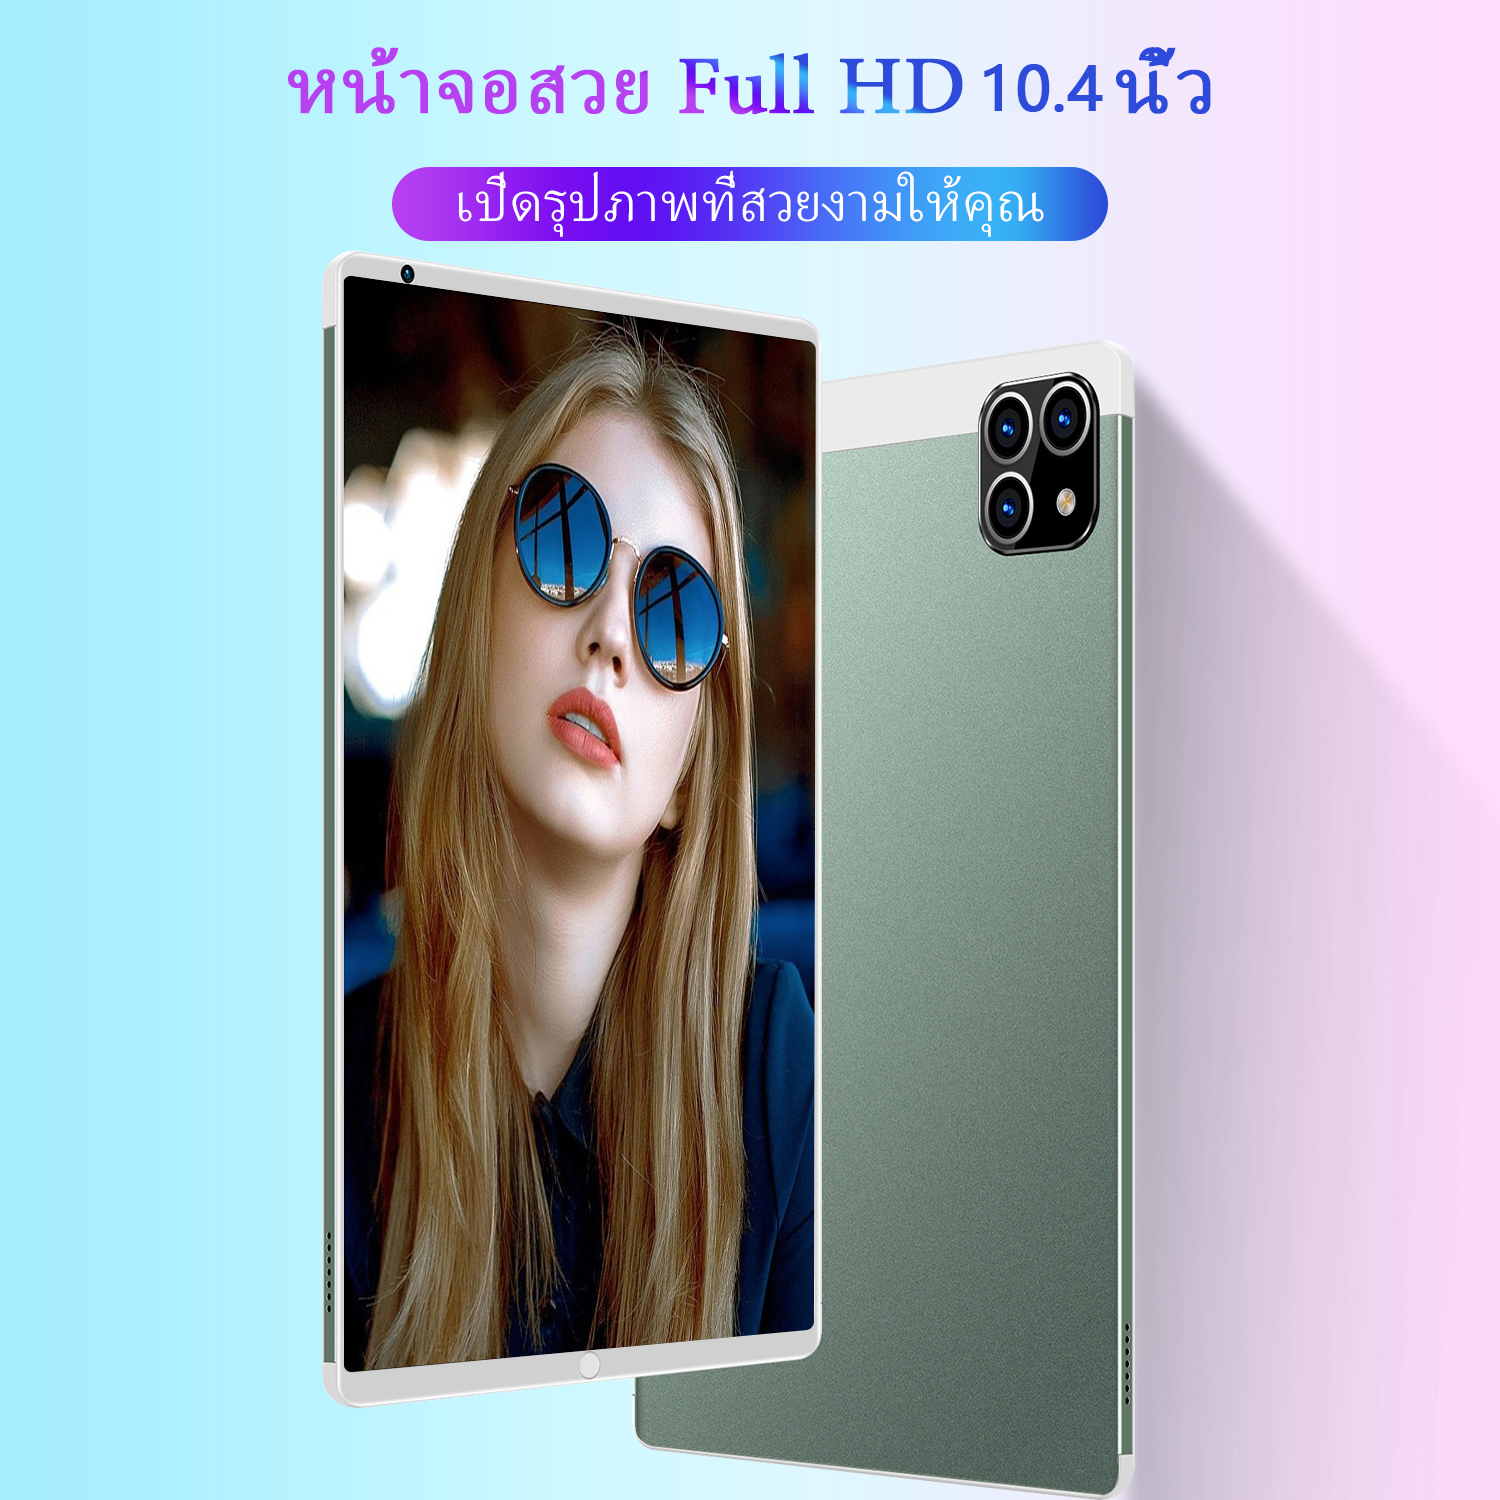 รูปภาพของ 【ซื้อ 1 แถม 1】ใหม่ Sansumg Tab A8 แท็บเล็ต 10.4 นิ้ว Tablet Wifi 4g/5G แท็บเล็ตพีซี RAM16G ROM512G แท็บเล็ตโทรได้ รองรับ 2 ซิมการ์ด Andorid11.0 Full HD 8800 mAh ไอเเพ็ด แท็บเล็ตราคาถูก ไอเเพ็ดส่งฟรี แท็บเล็ตของแท้ แท็บเล็ตราคาถูกรุ่นล่าสุด รับประกัน 1 ปี